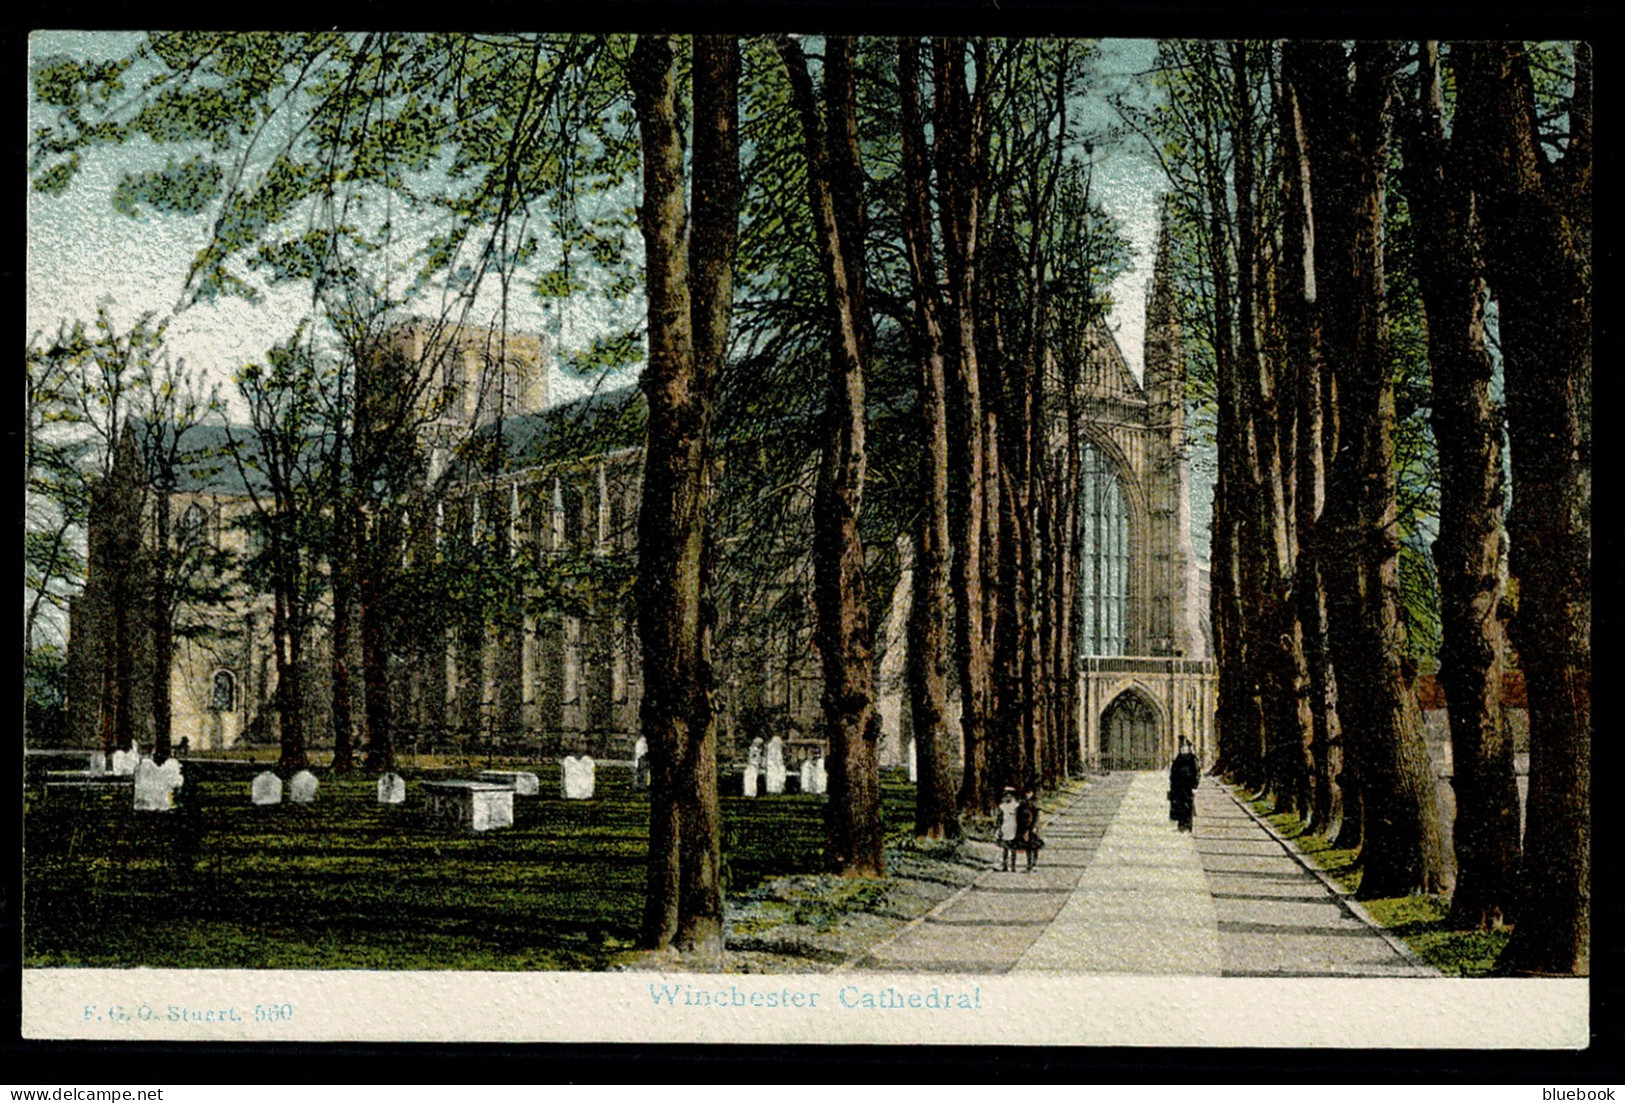 Ref 1621 - 1909 FGO F.G.O. Stuart Postcard - Winchester Cathedral No. 560 - Hampshire - Winchester